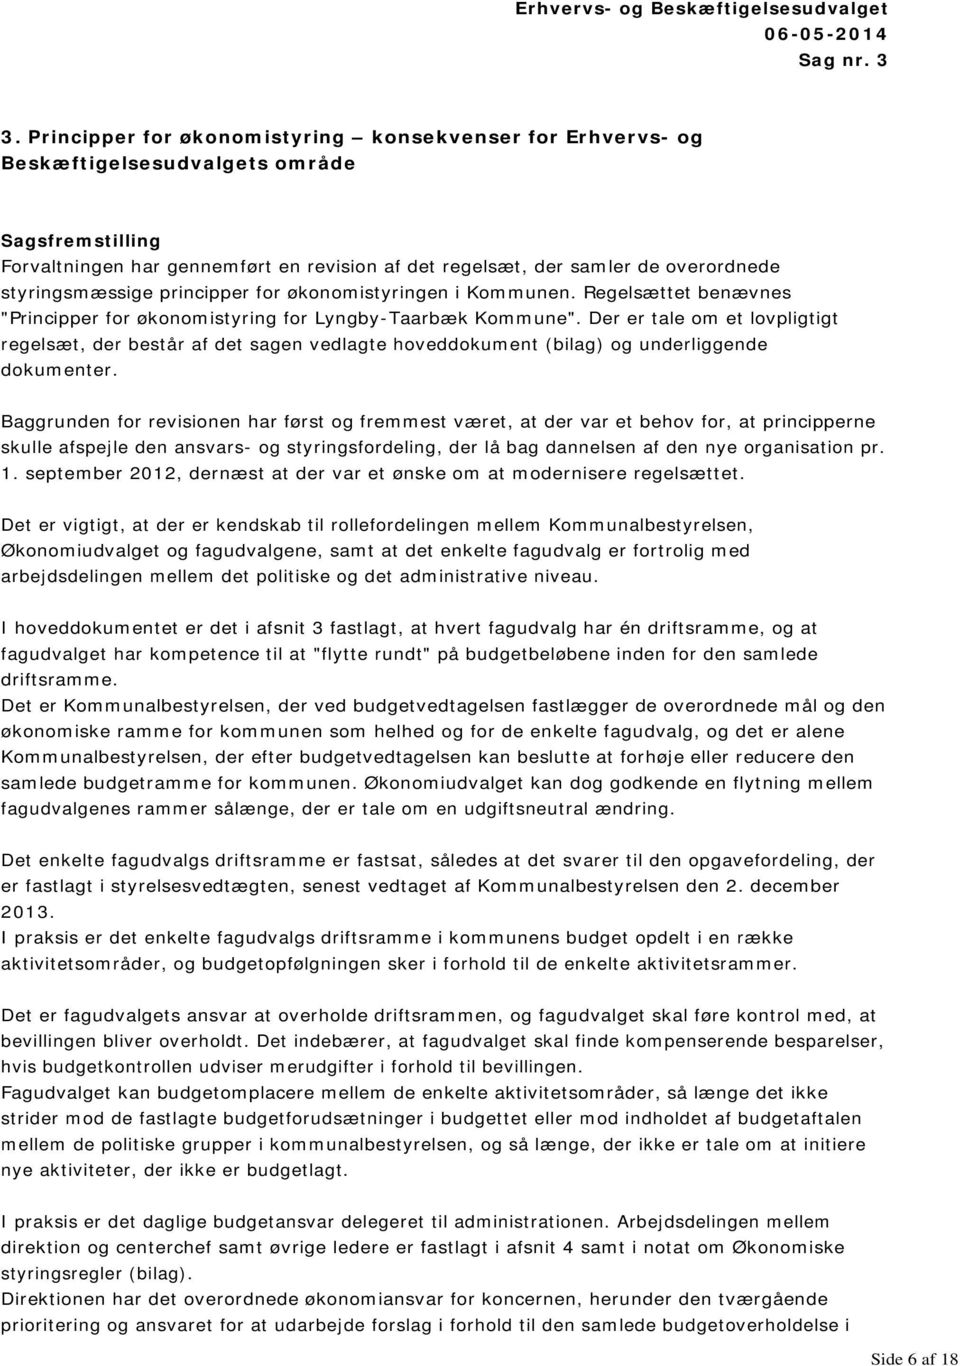 styringsmæssige principper for økonomistyringen i Kommunen. Regelsættet benævnes "Principper for økonomistyring for Lyngby-Taarbæk Kommune".